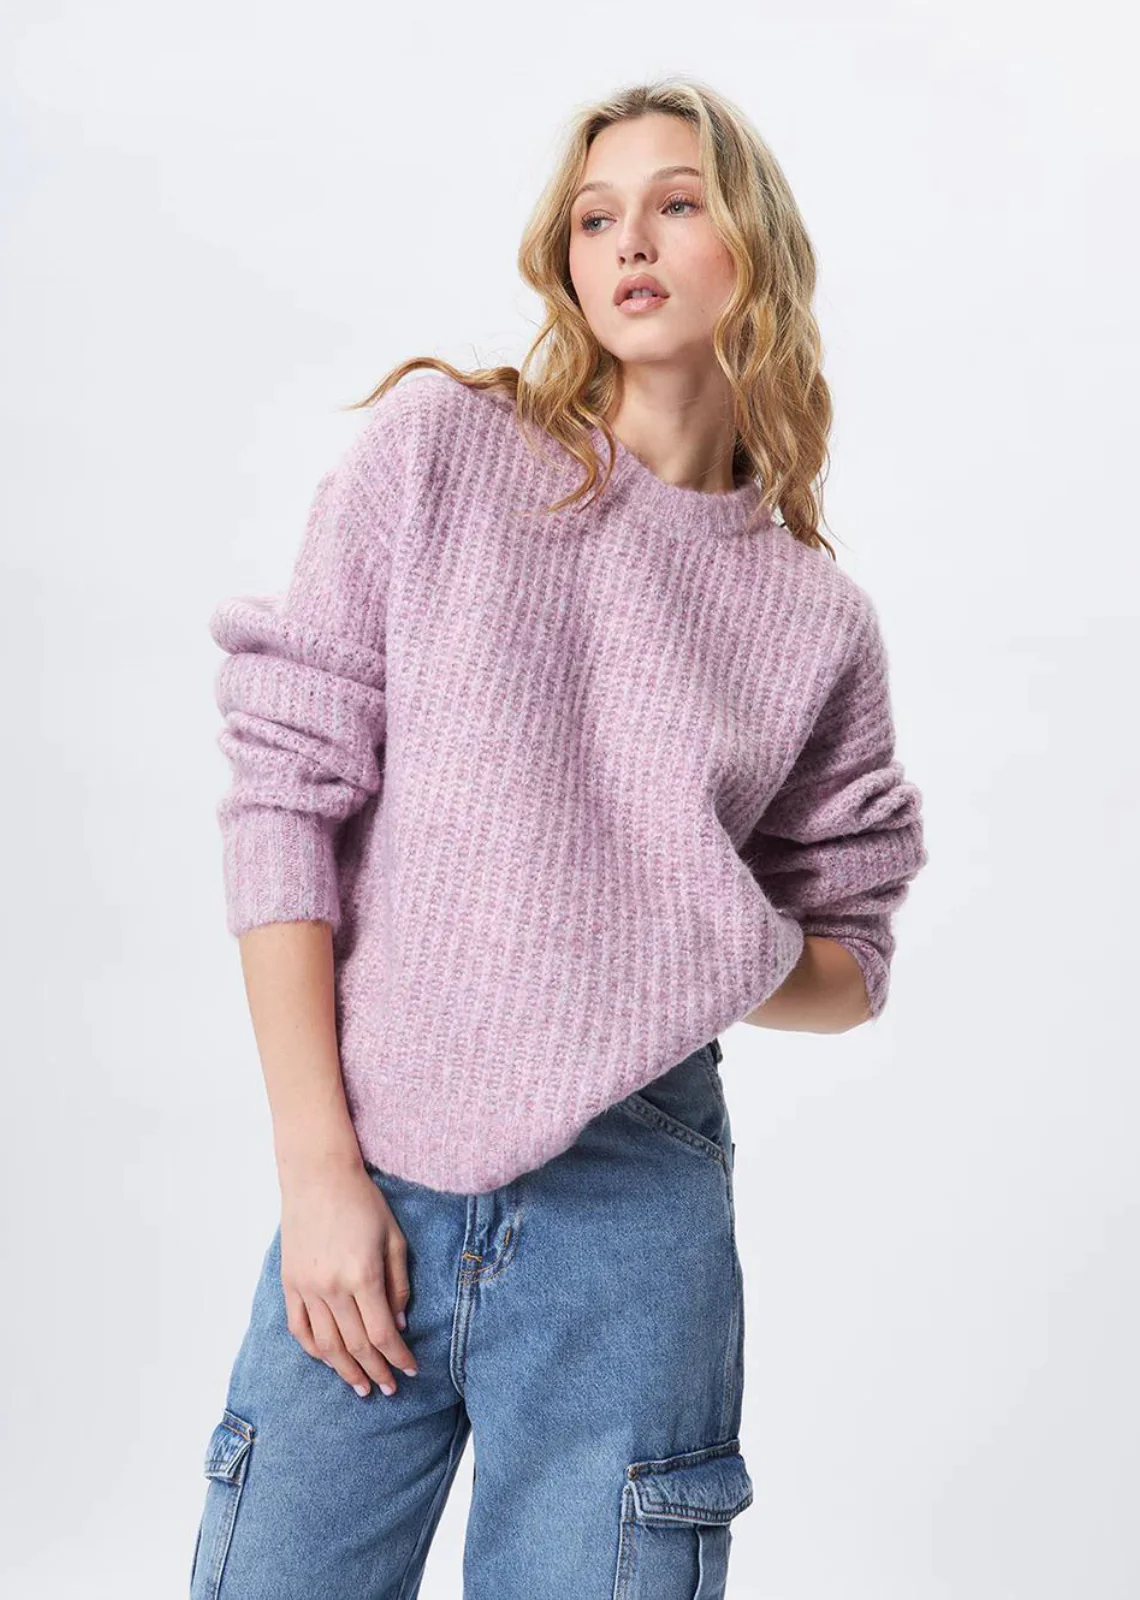 Louie Crewneck Knit Sweater - Adorn Boutique